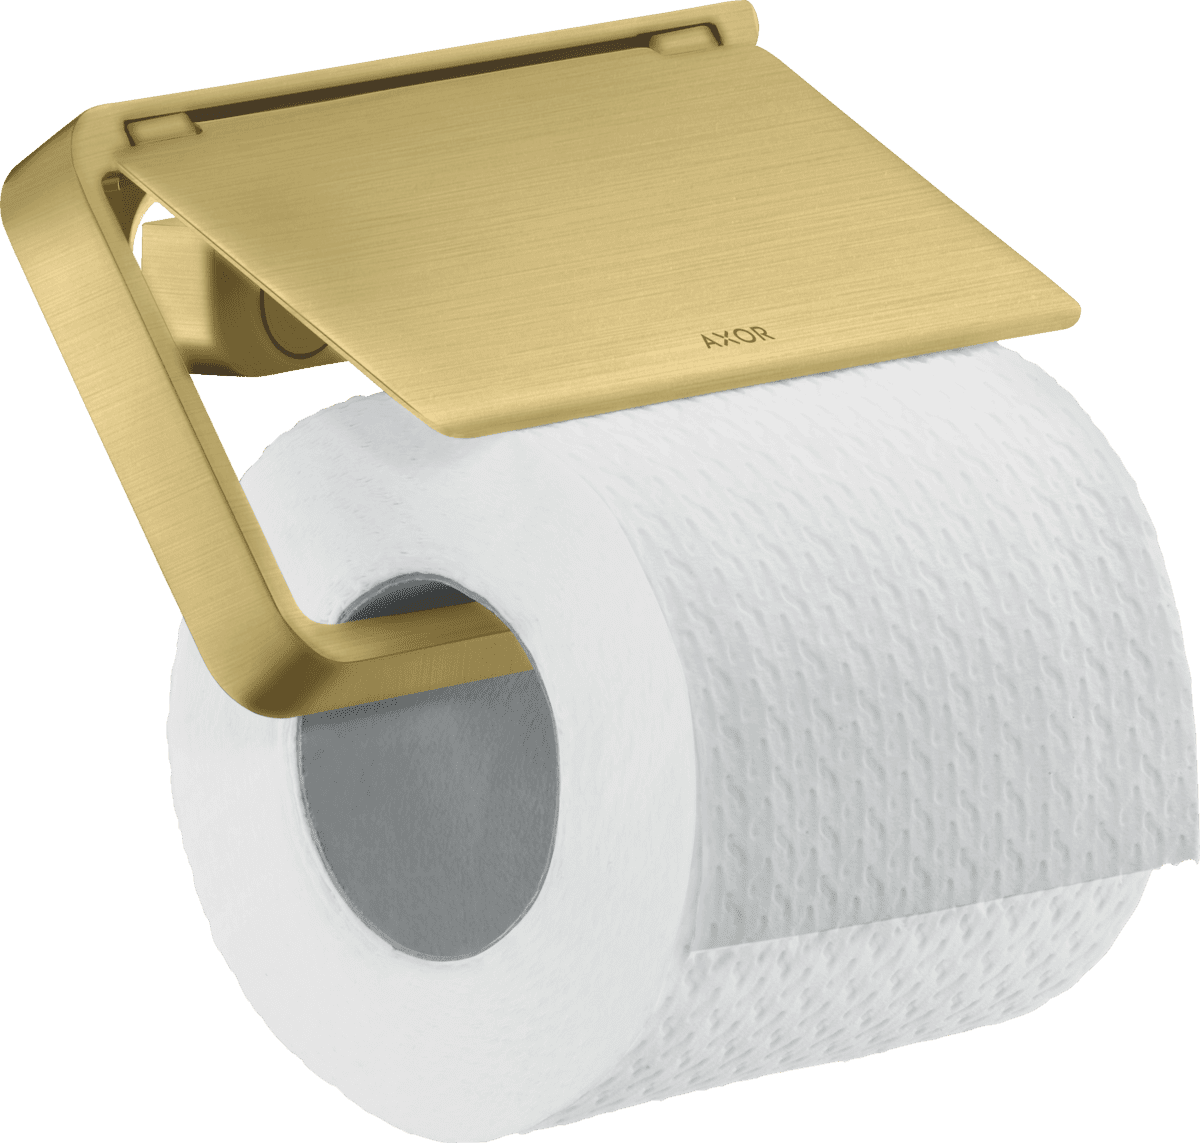 εικόνα του HANSGROHE AXOR Universal Softsquare Toilet paper holder with cover #42836950 - Brushed Brass